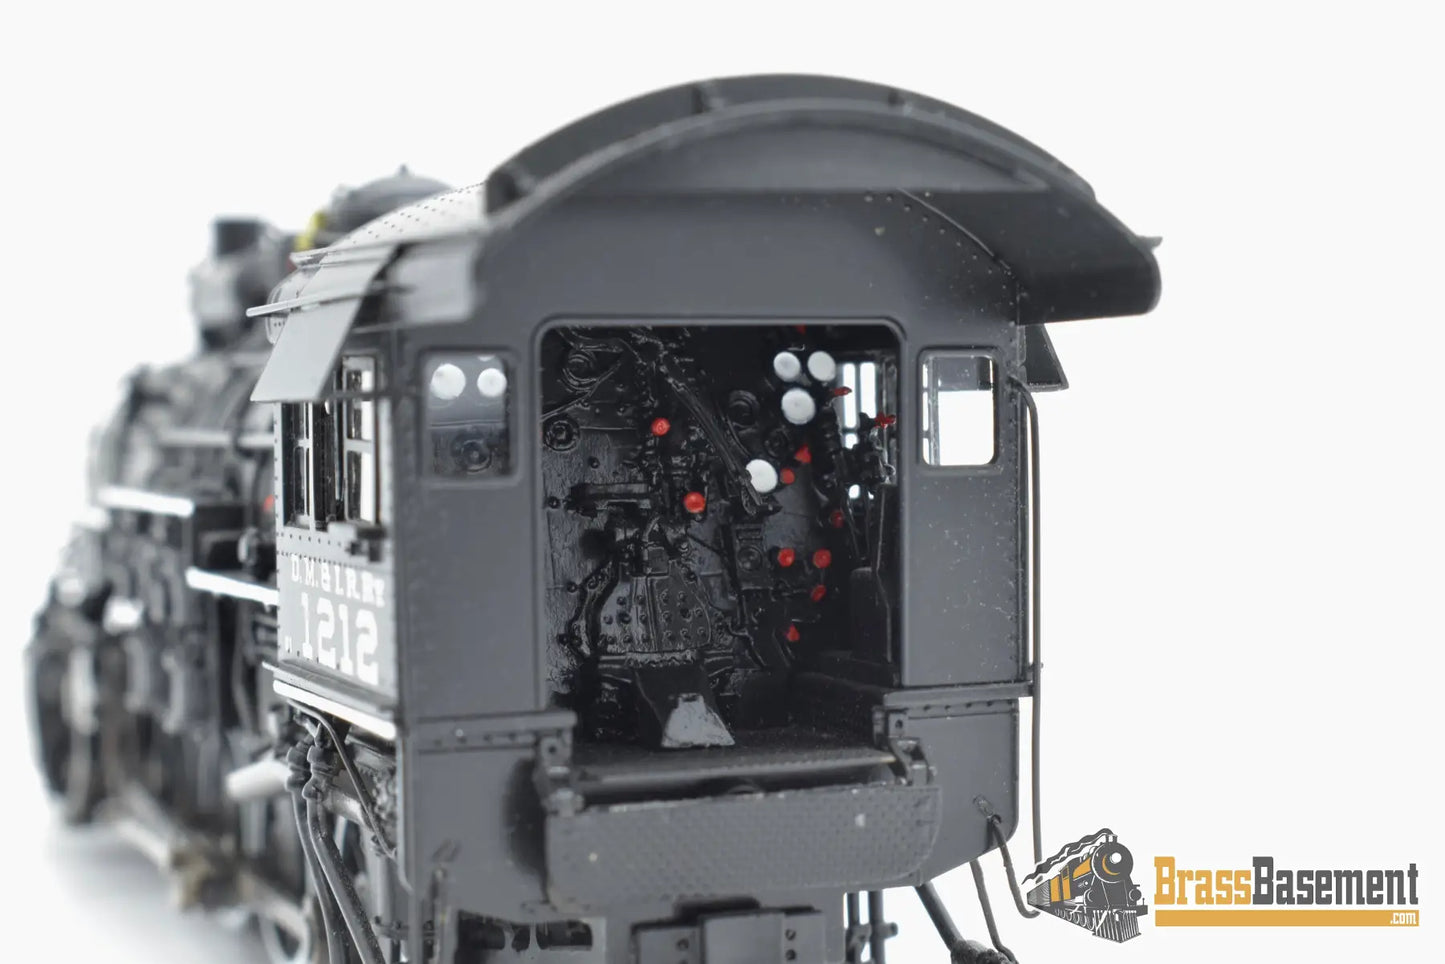 Ho Brass - Psc 17114 - 1 Dm&Ir 2 - 8 - 0 Black Boiler Late Rare Reverse Walschaerts Valve Gear Steam